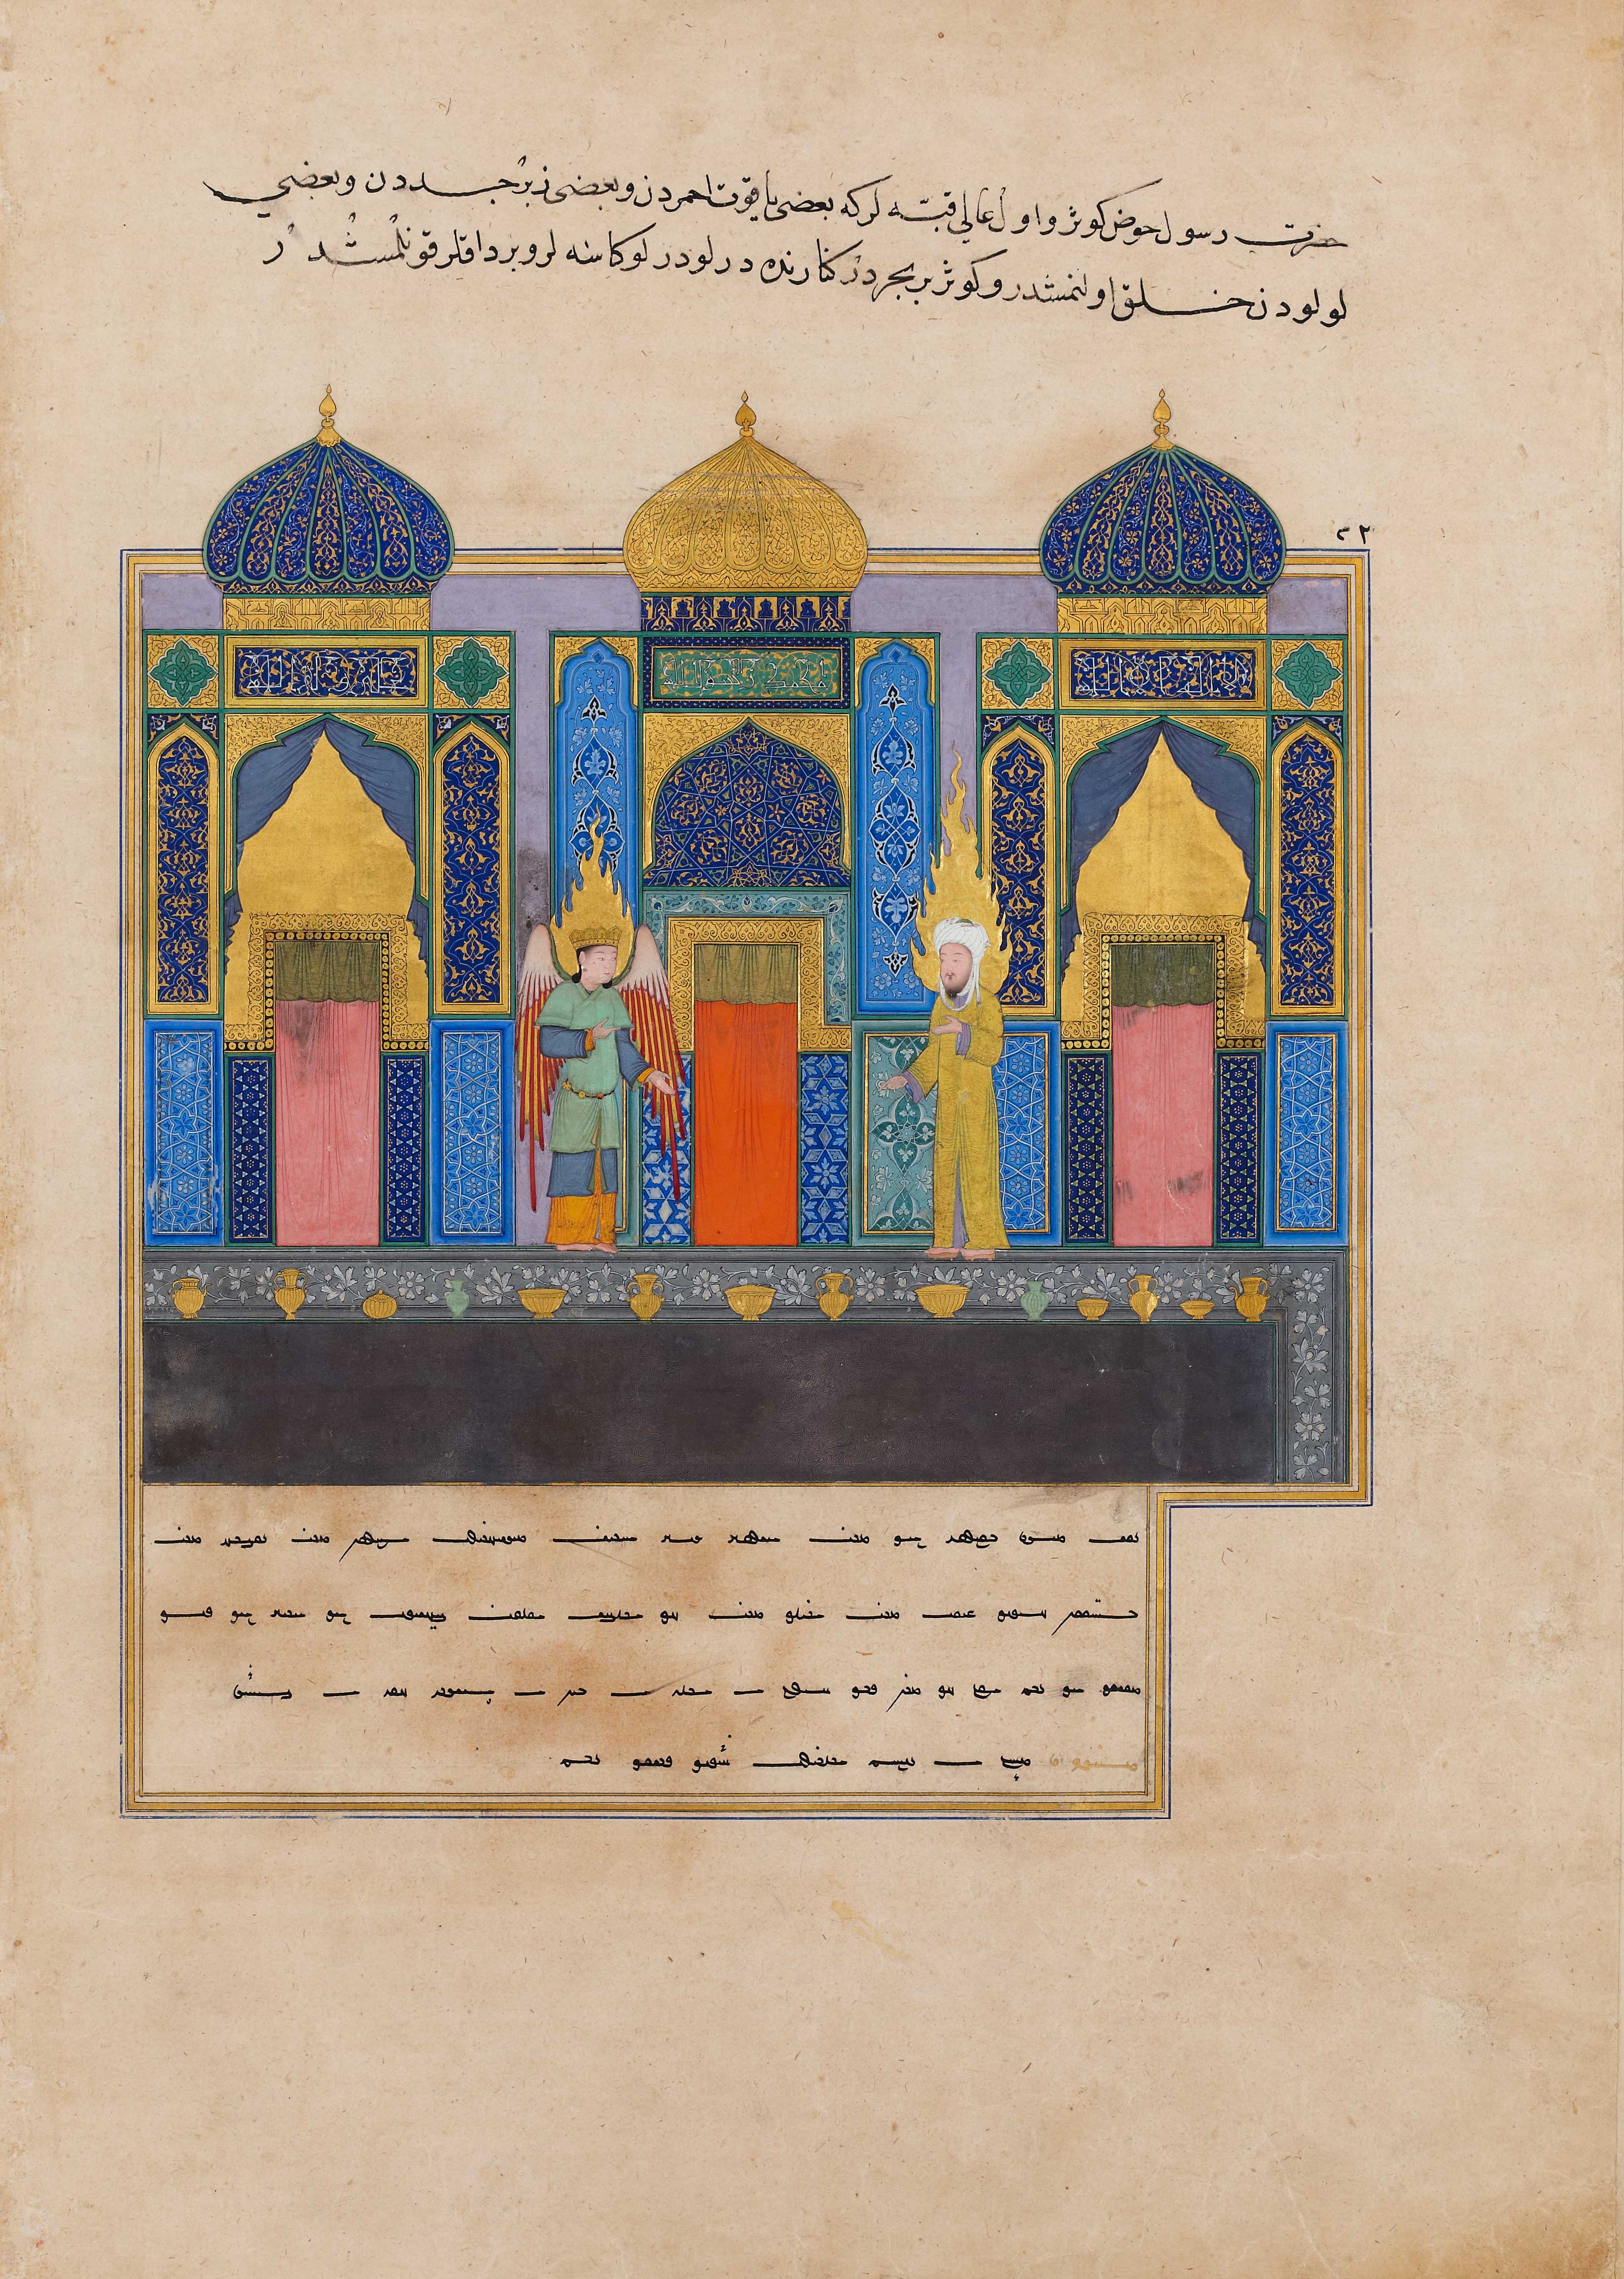 Resim 5. Cebrâil’in, Hz. Muhammed’i Cennet kapılarında karşılaması. (Yazarı belirsiz, Mirâcnâme, muhtemelen Herat, 1465 civarı. David Collection.)